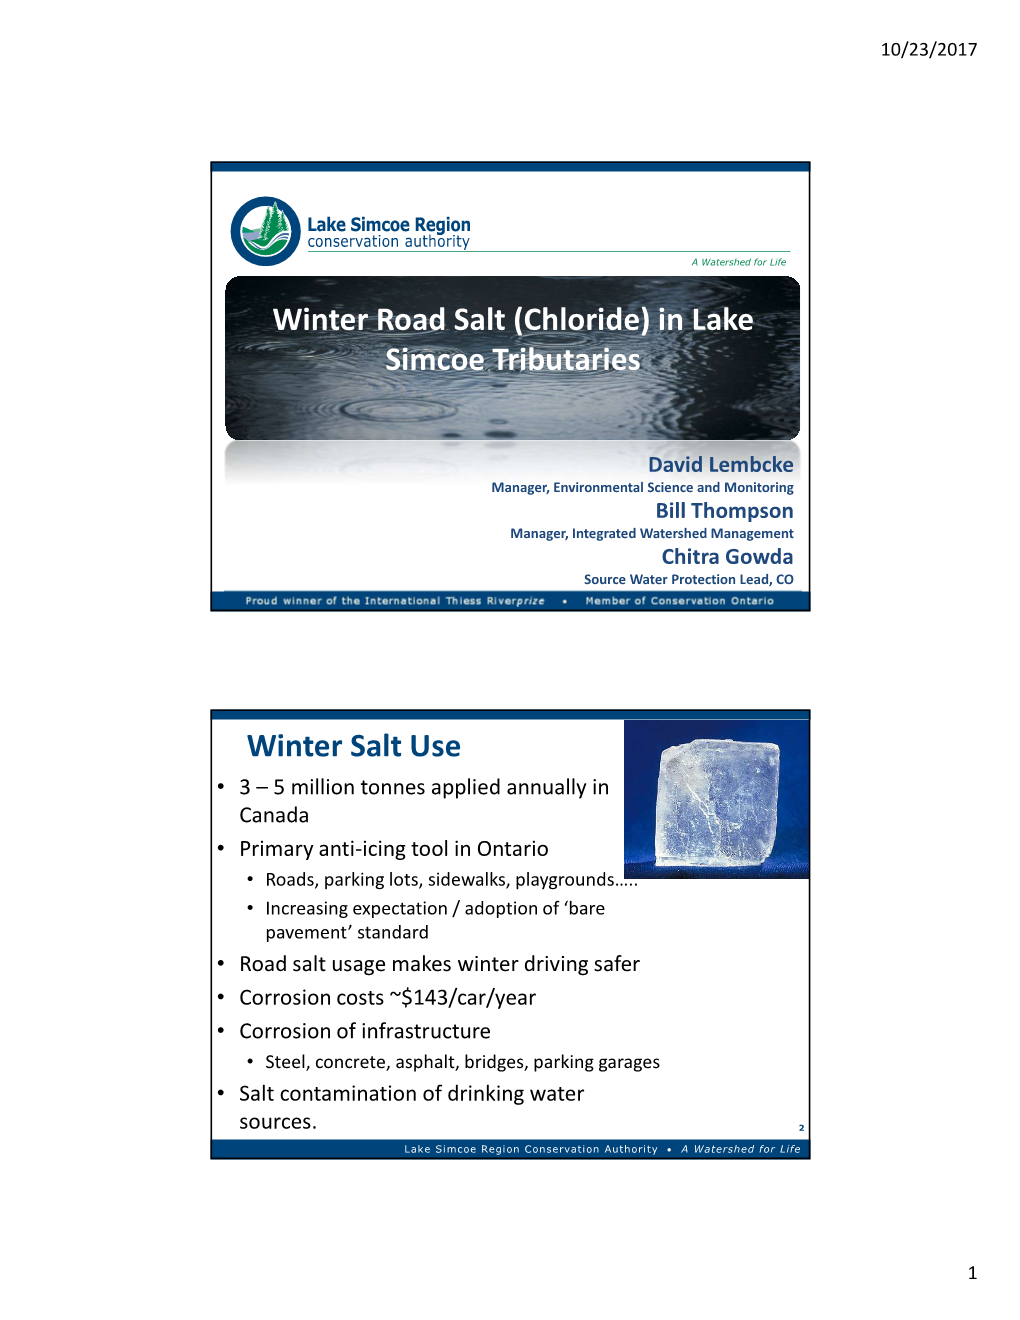 Winter Road Salt (Chloride) in Lake Simcoe Tributaries Winter Salt